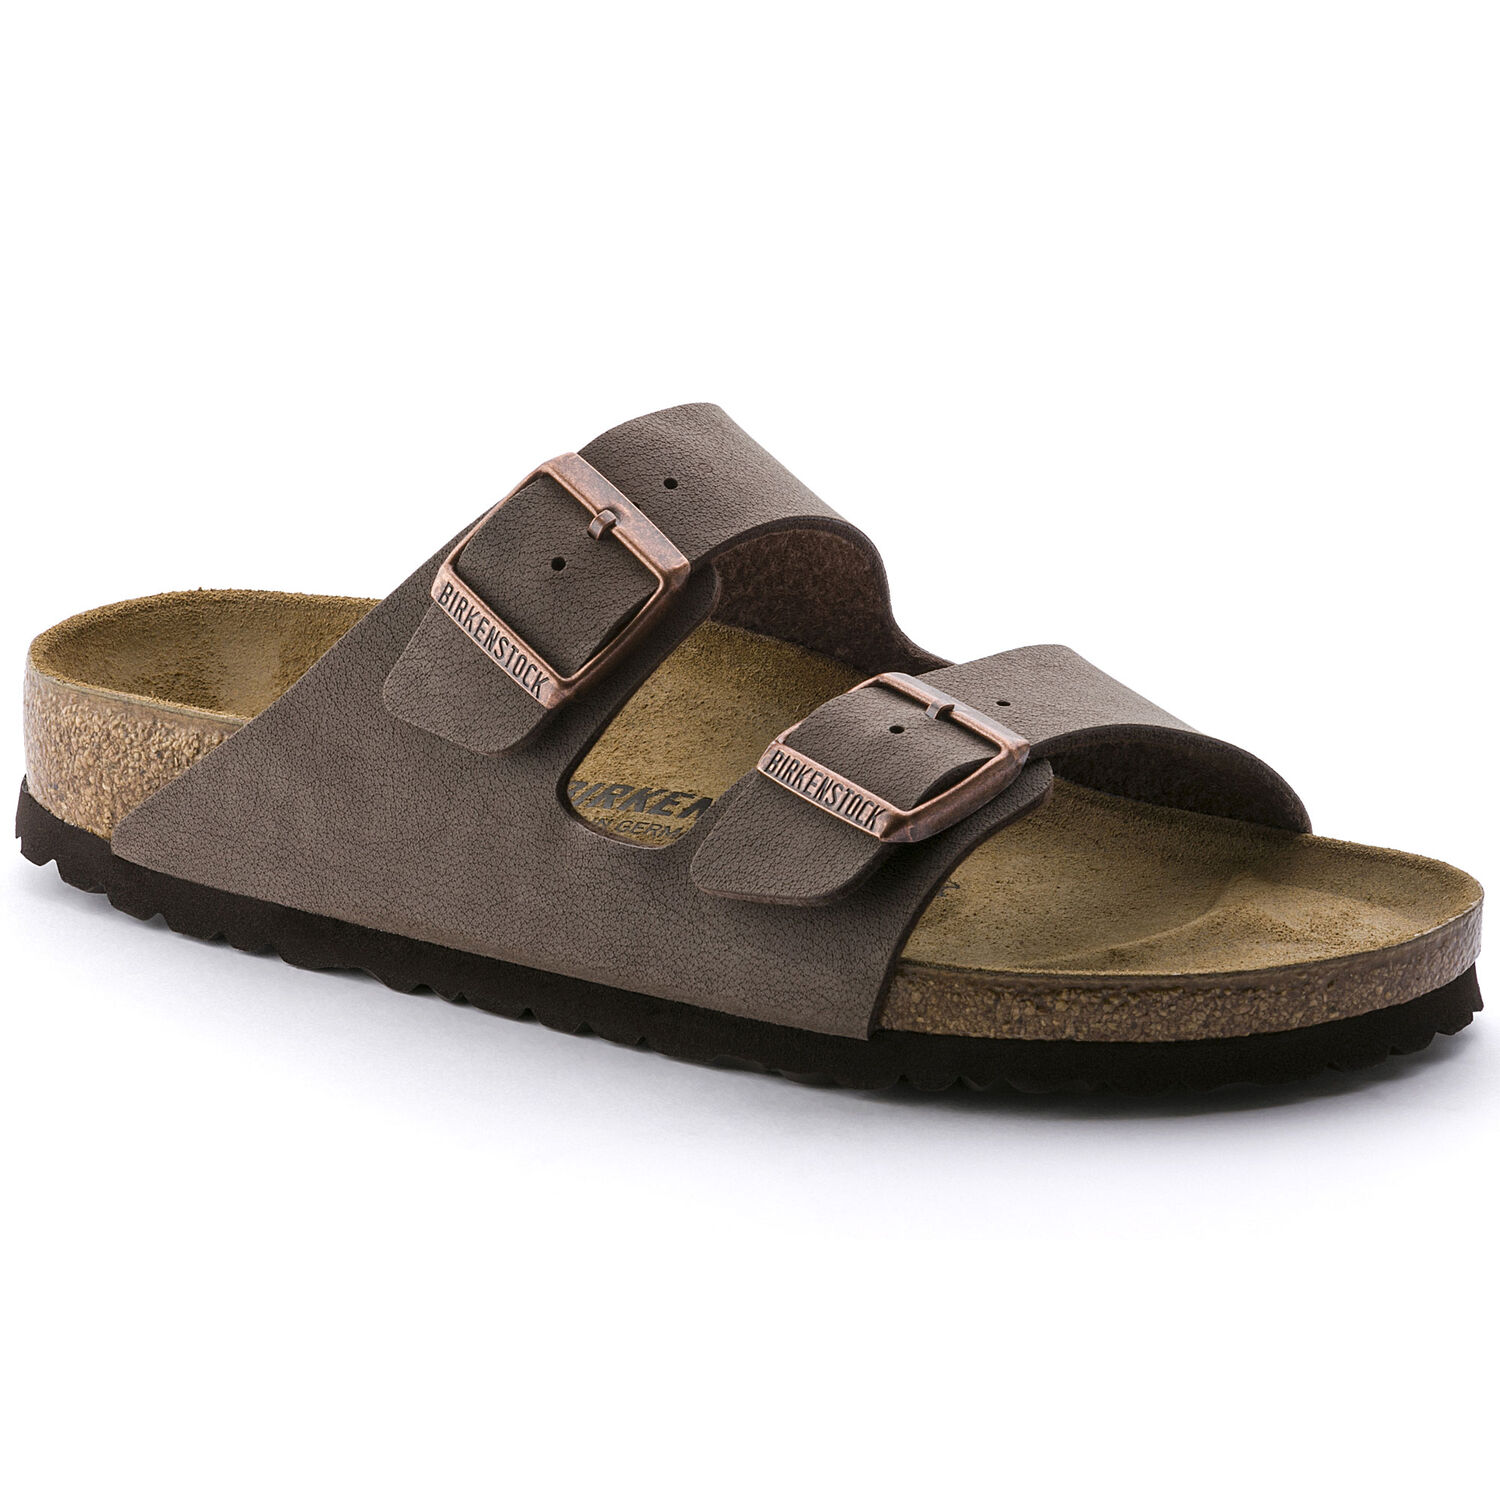 Une paire de sandales Birkenstock Arizona couleur mocha sur un fond blanc. Les sandales sont faites en Birkibuc, pour un fini cuir. Les sandales ont deux boucles métalliques pour un ajustement sûr.